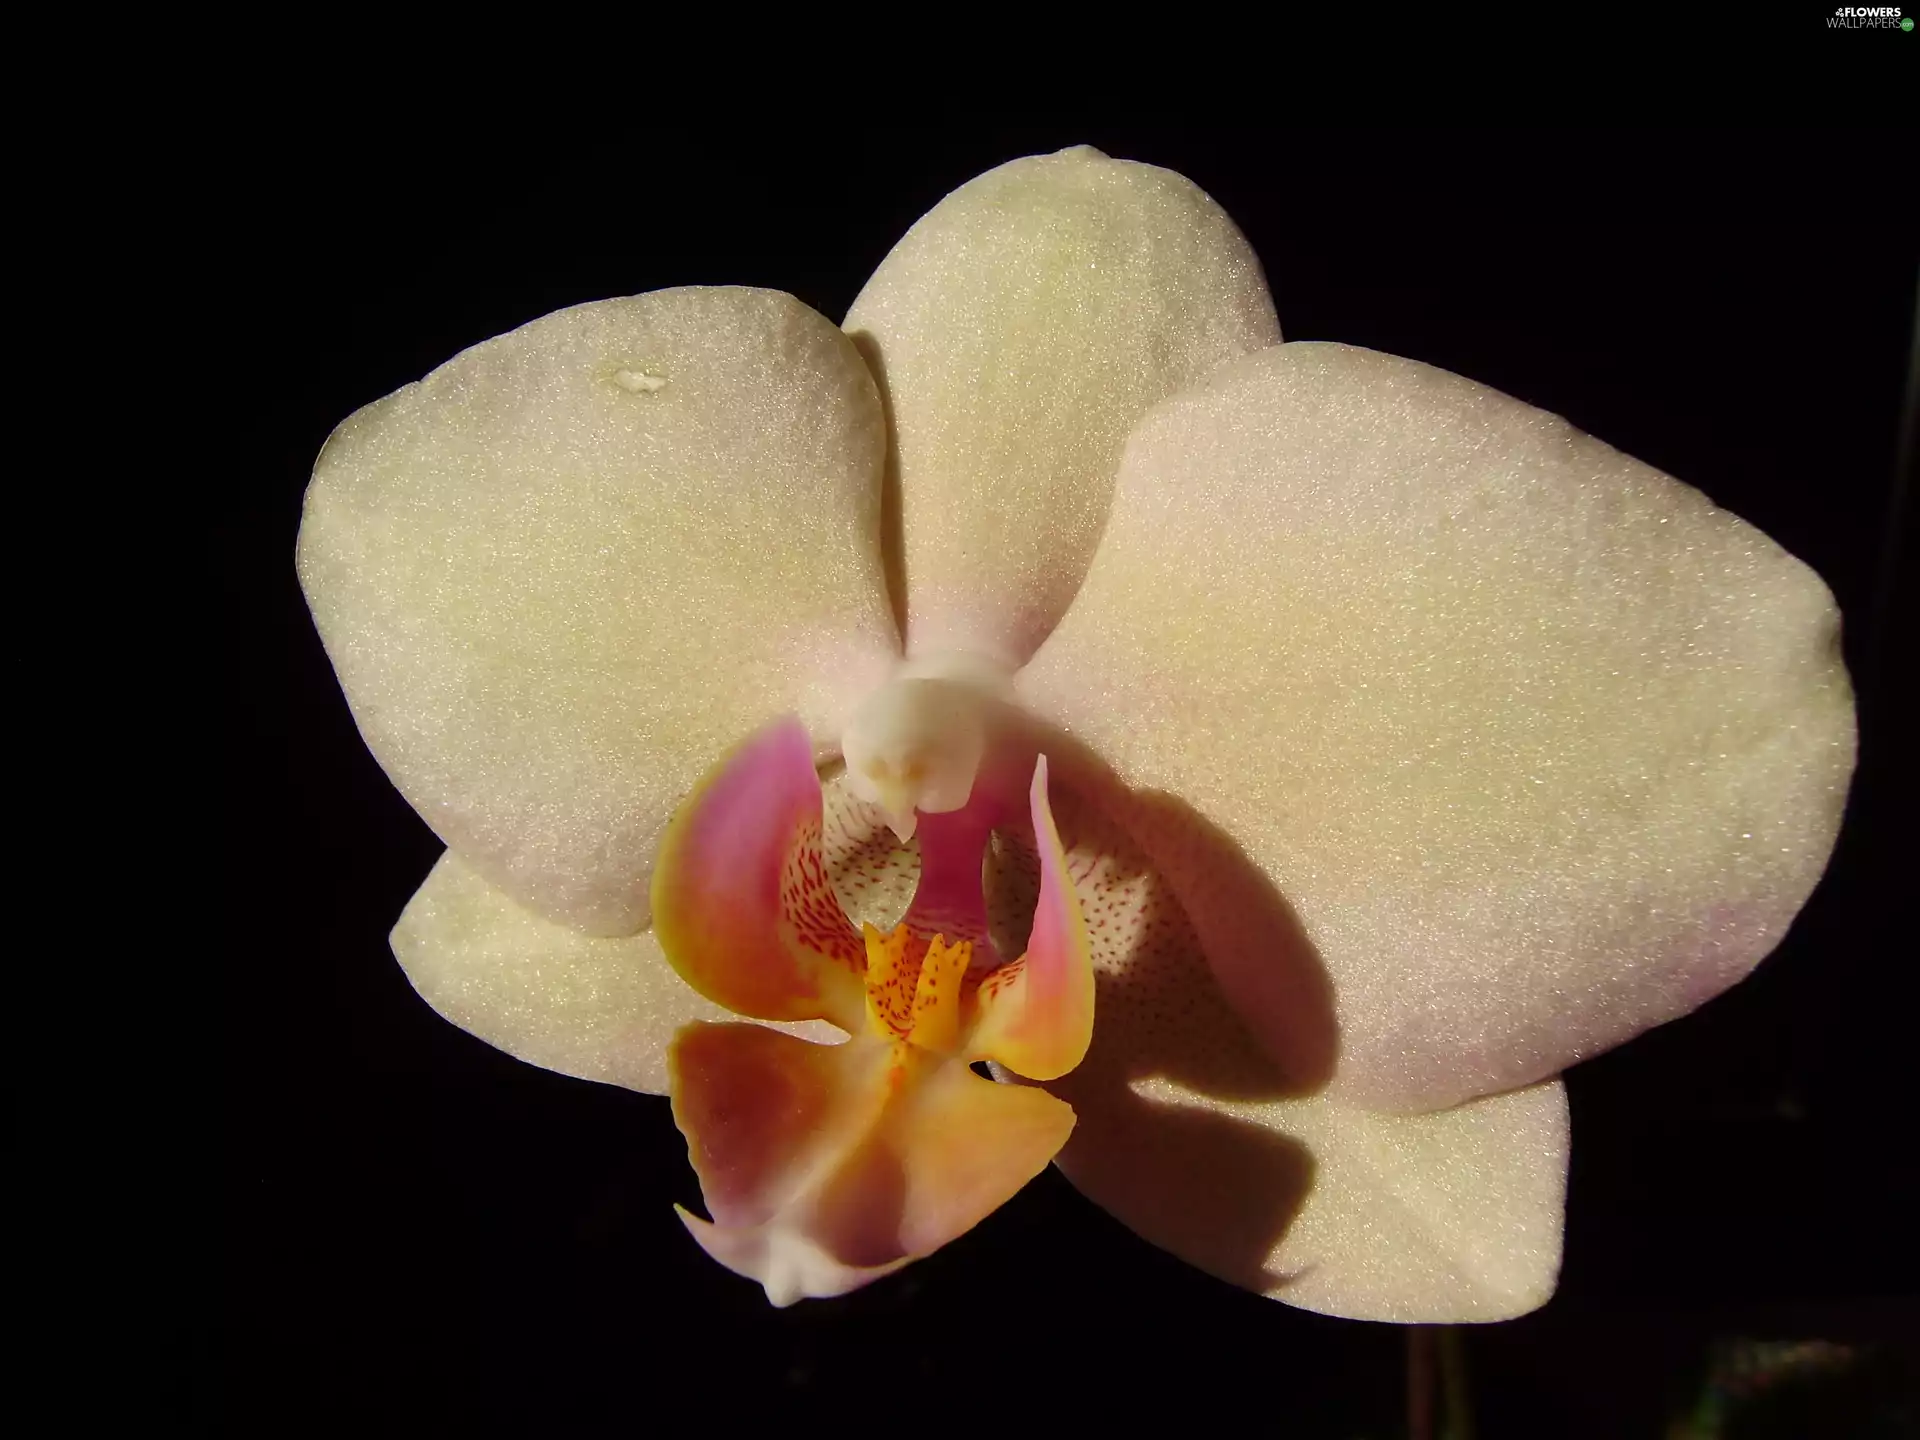 orchid, Phalaenopsis